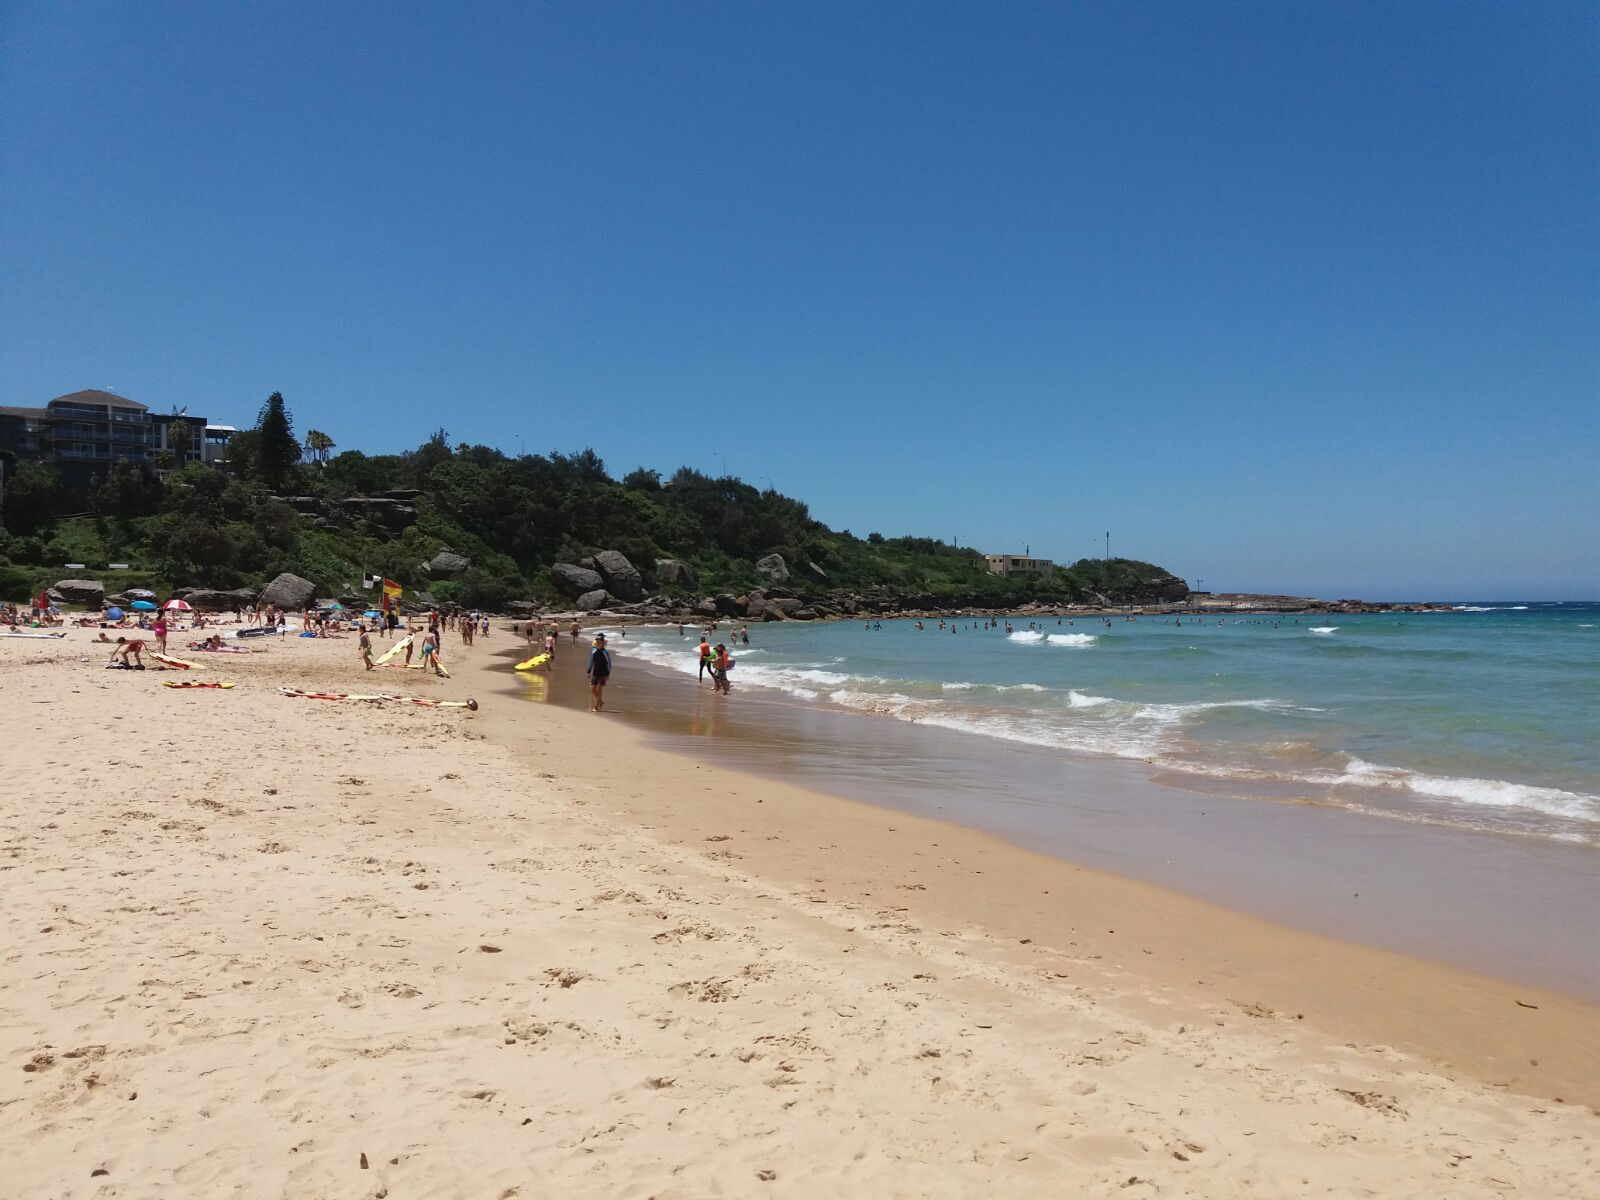 Photo de Freshwater Beach - endroit populaire parmi les connaisseurs de la détente